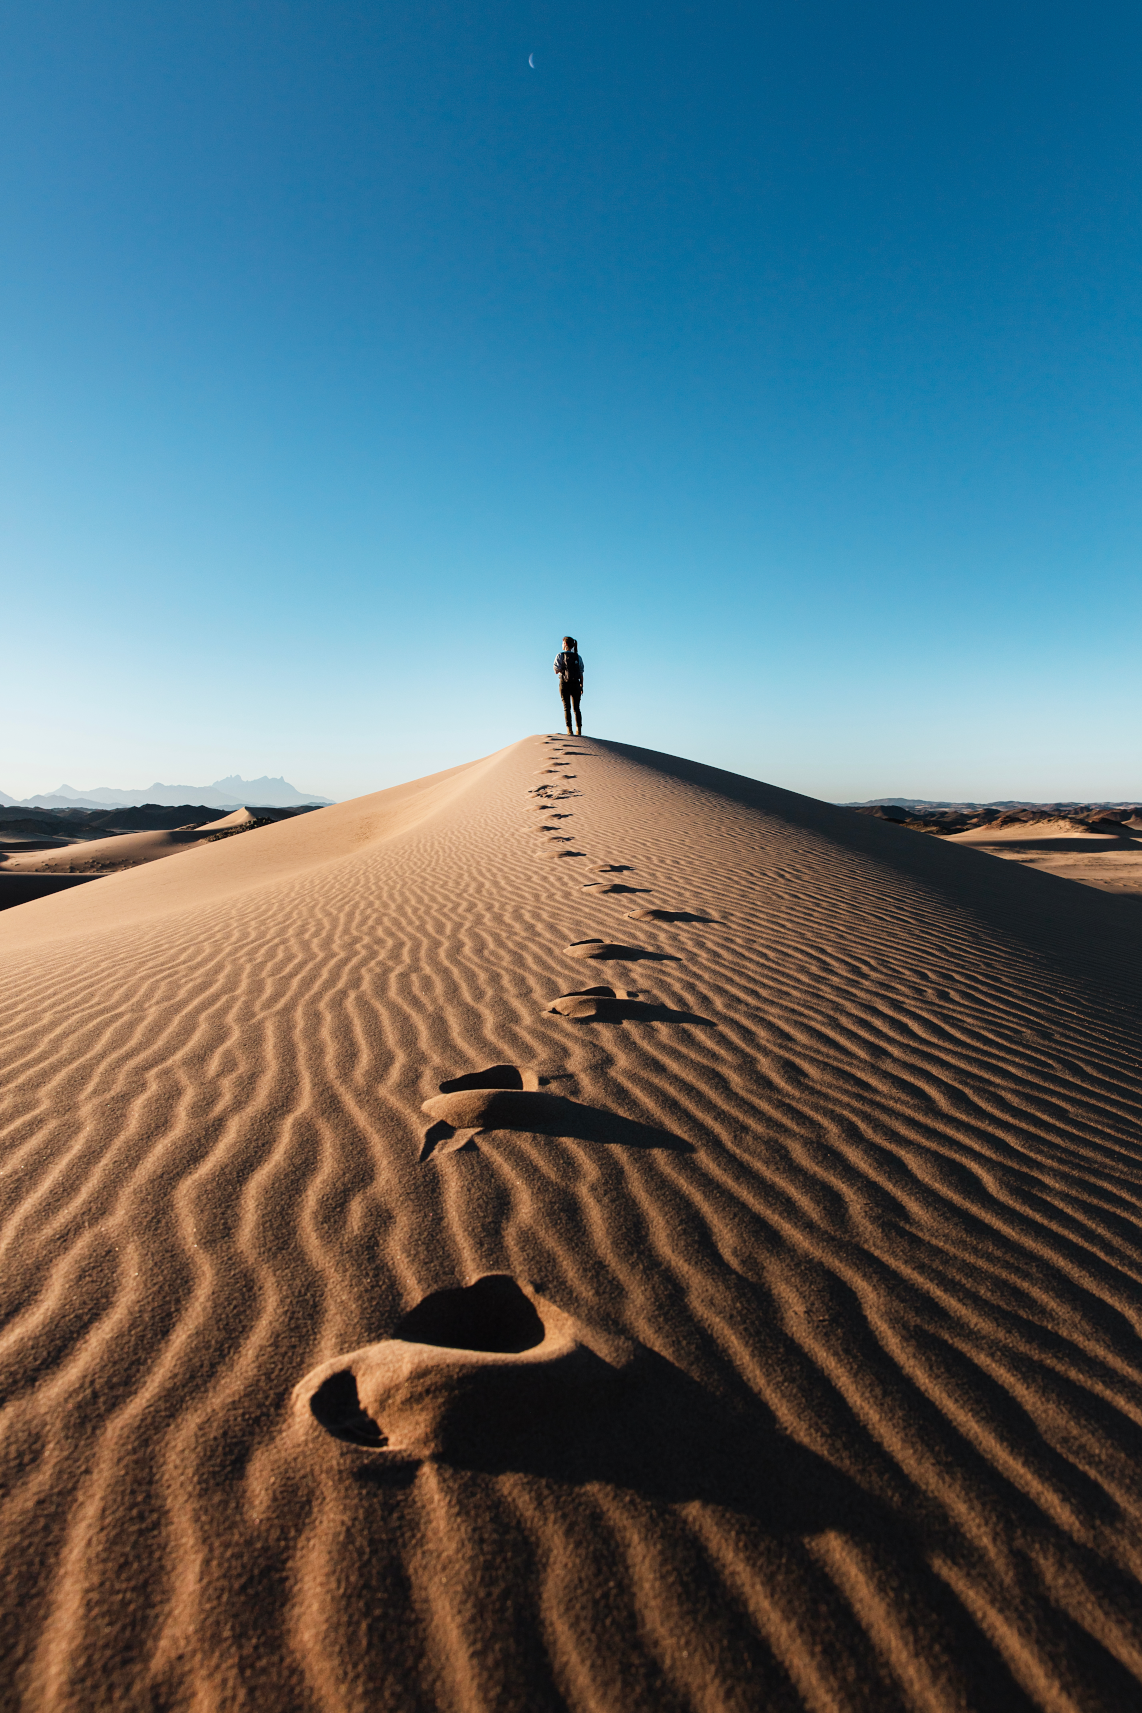 Tracks through desert sands.